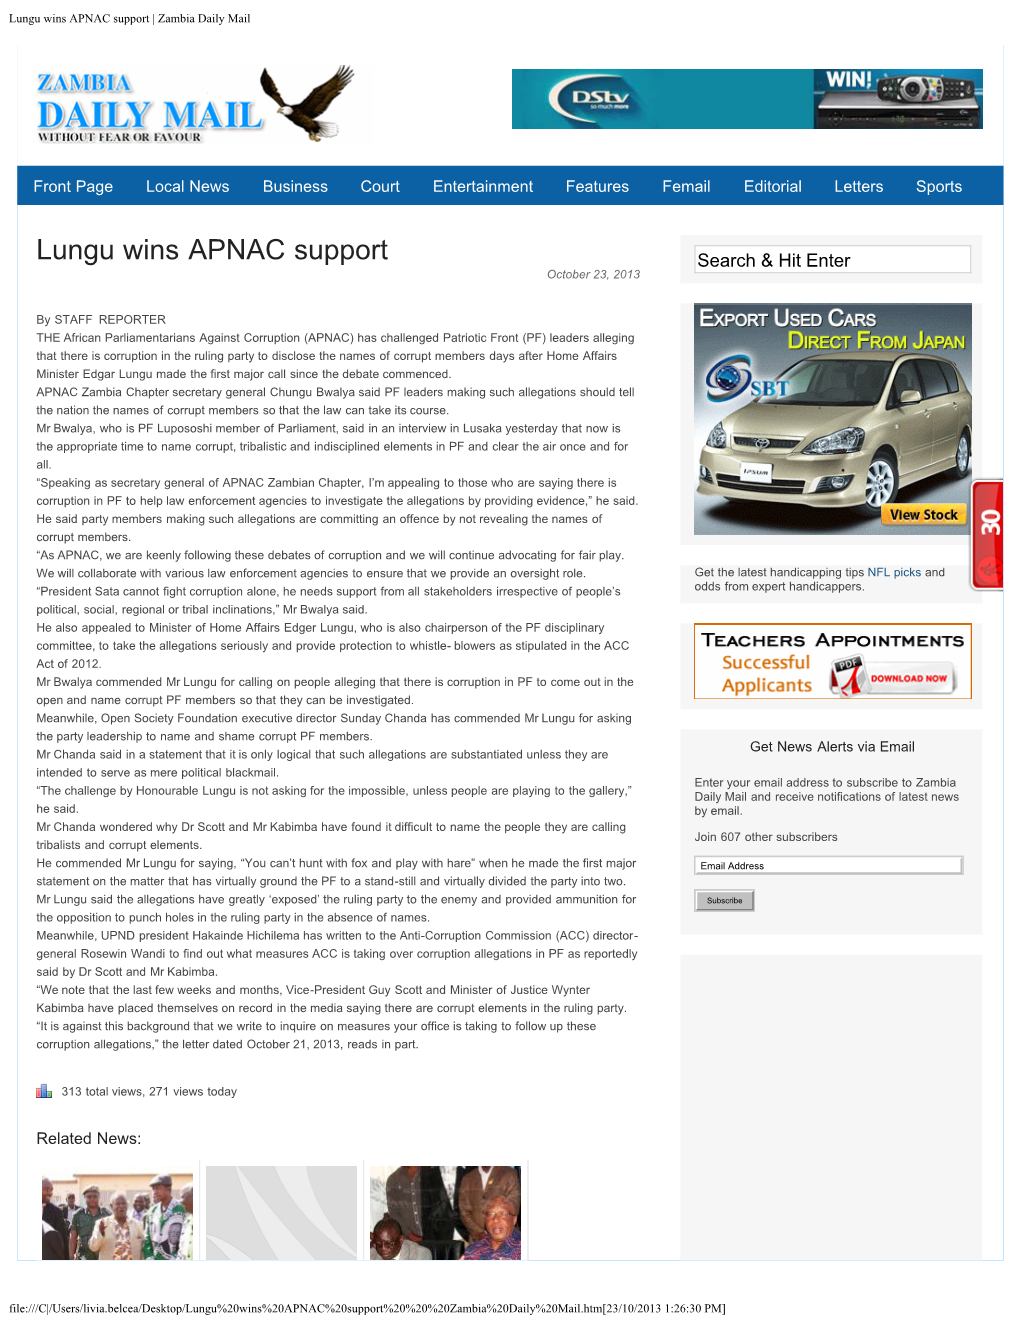 Lungu Wins APNAC Support | Zambia Daily Mail